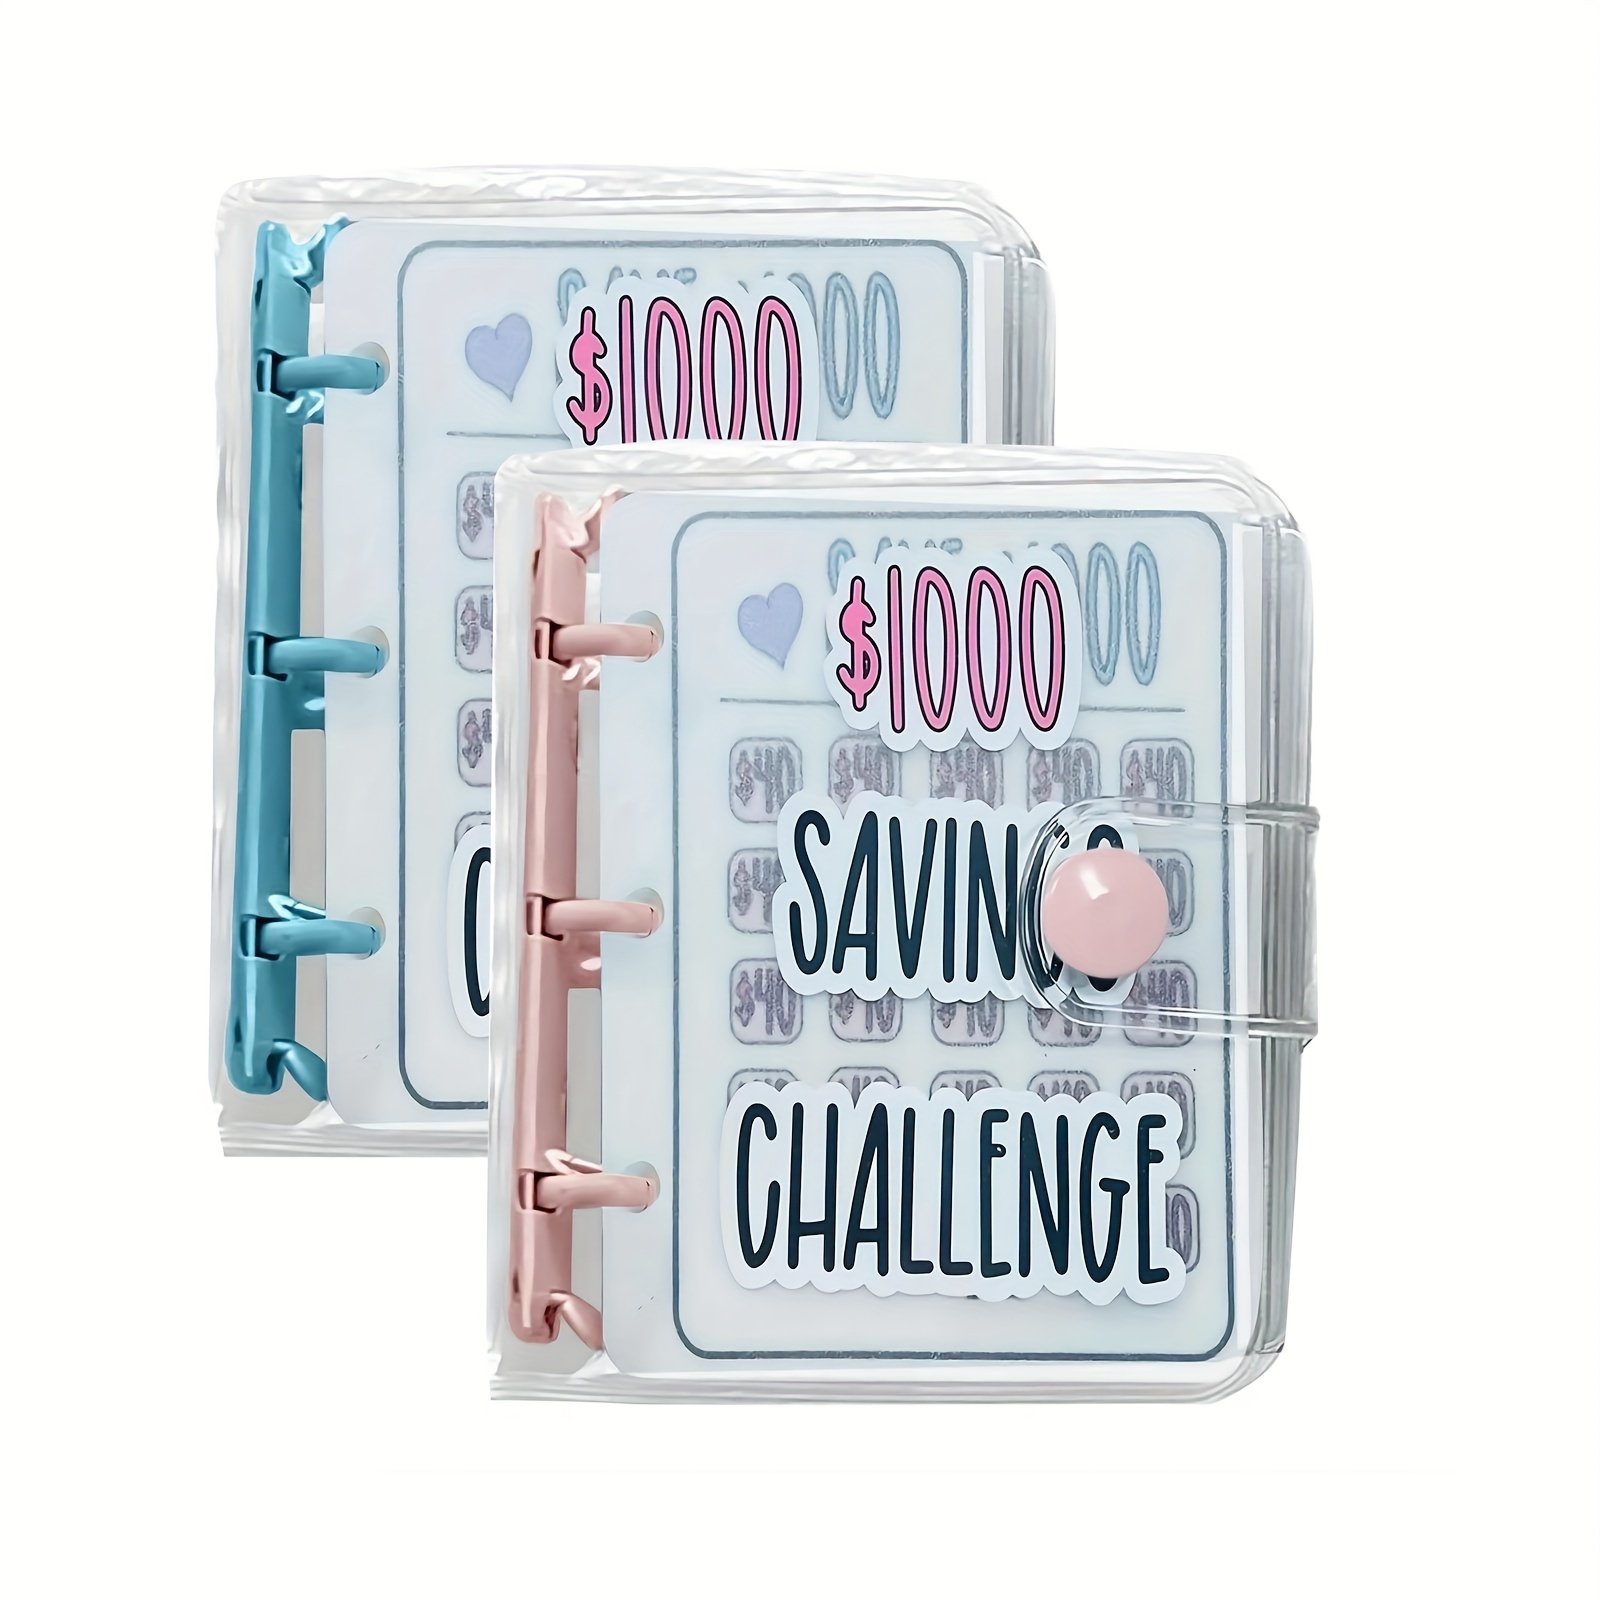 

1000 Savings Challenge Binder, Money Saving Binder, Savings Challenges Book With Envelopes, Envelope Savings Challenge, Mini Budget Binder With Cash Envelopes